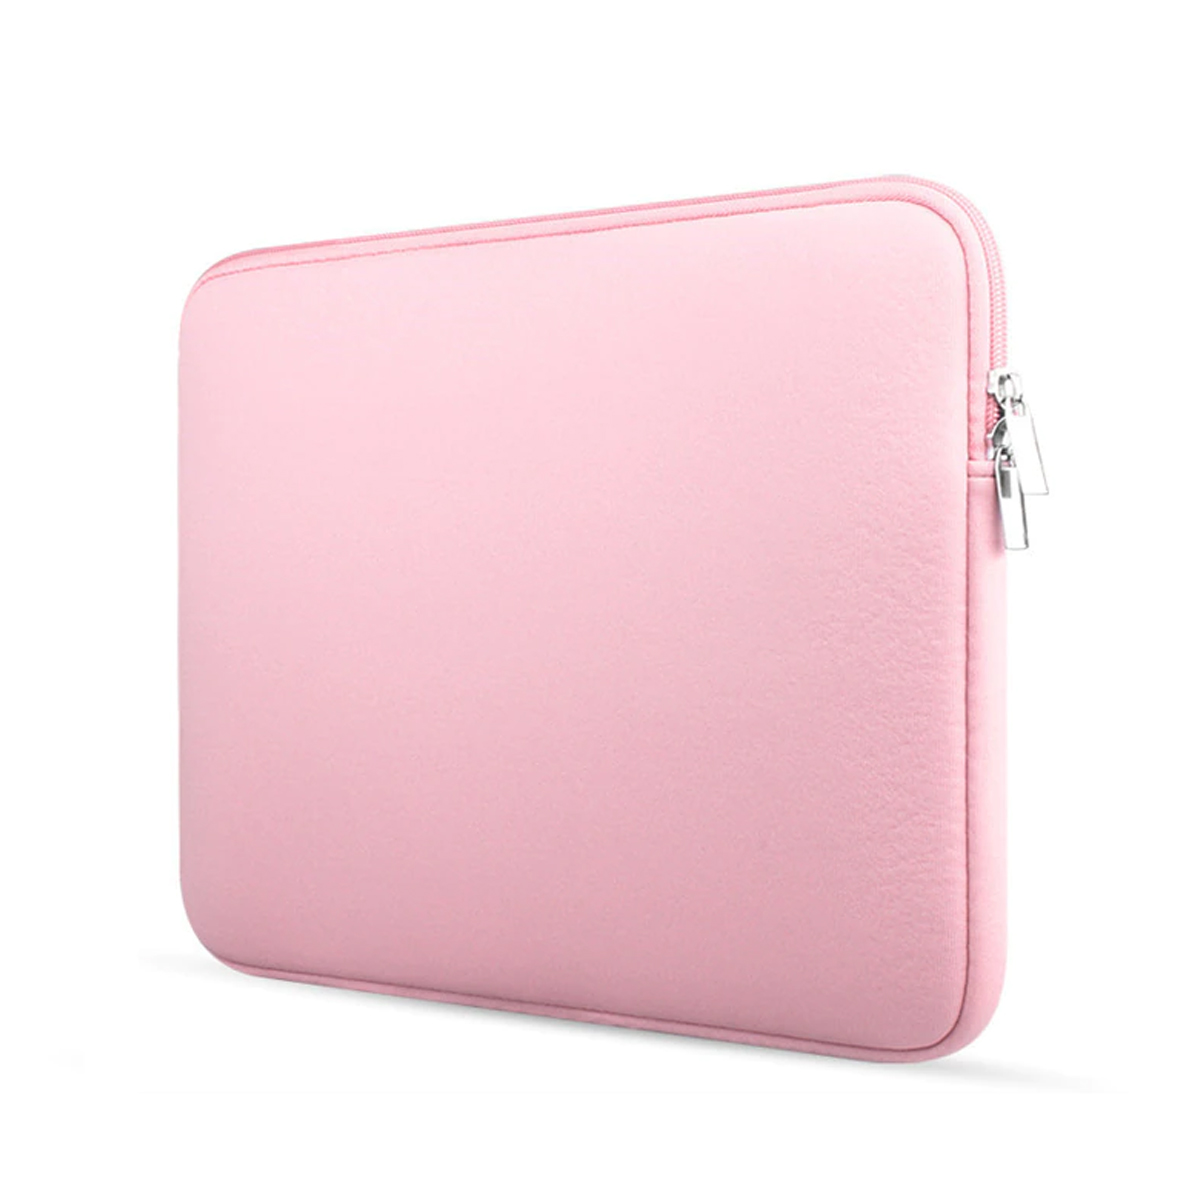 energie Gentleman vriendelijk Banyan Laptop en Macbook Sleeve - 13.3 inch - Roze | Case2go.nl